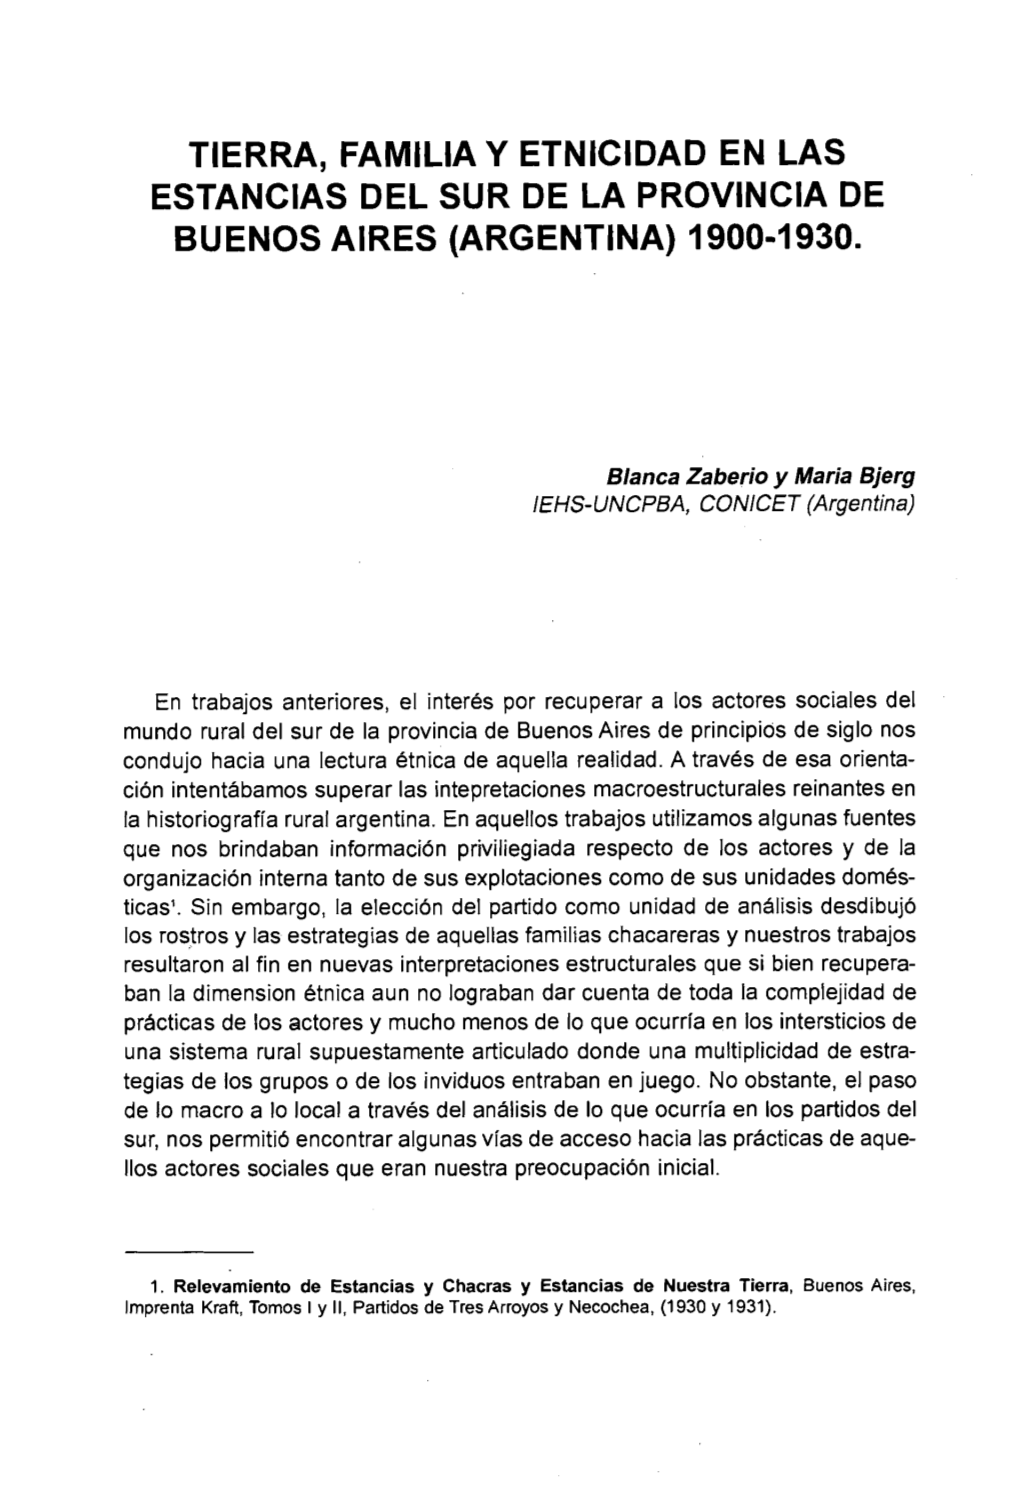 TIERRA, Famllla Y Etnlcldad EN LAS ESTANCIAS DEL SUR DE LA PROVINCIA DE BUENOS AIRES (ARGENTINA) 1900-1930